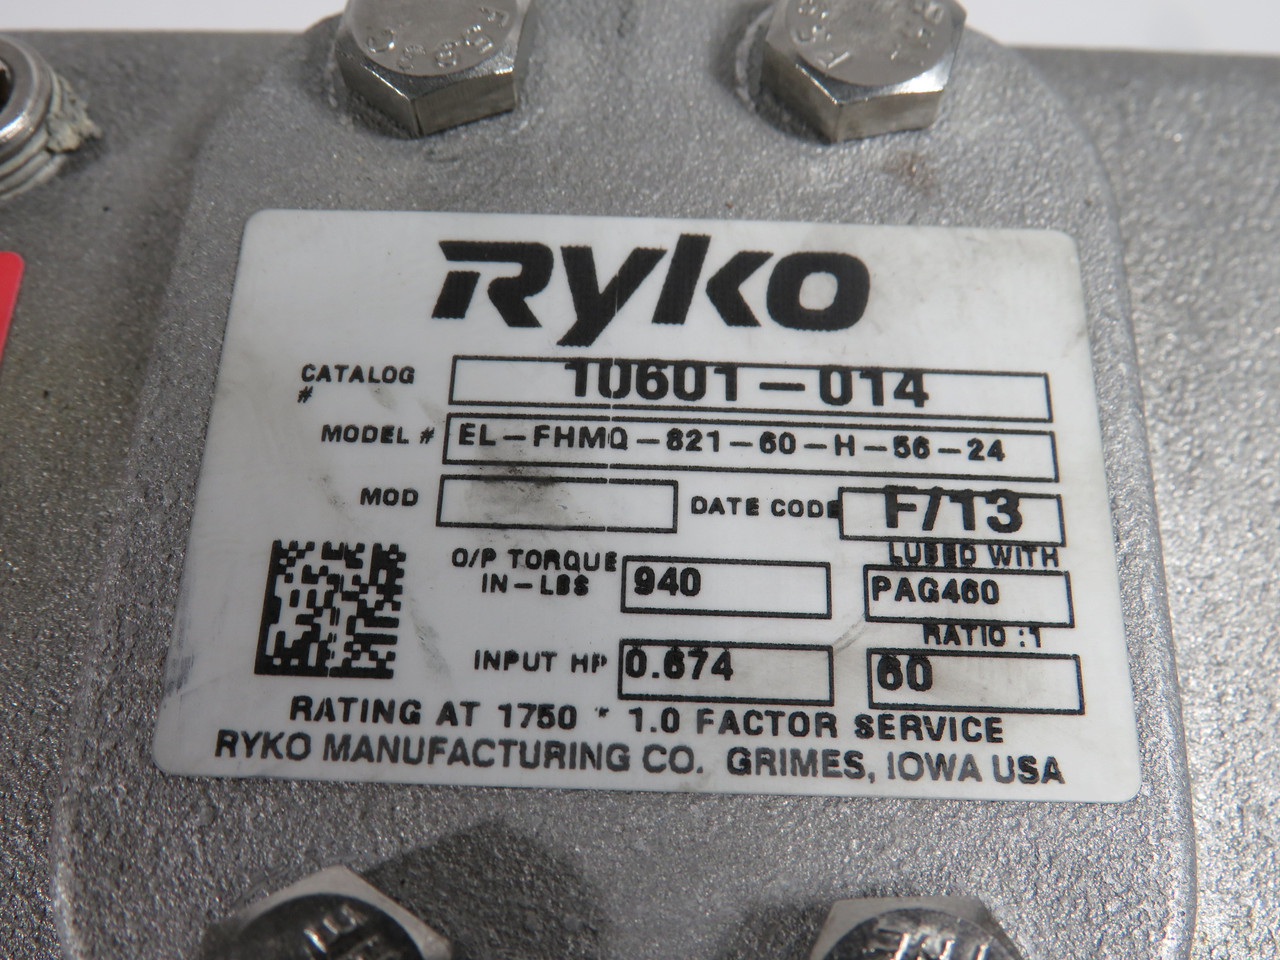 Ryko EL-FHMQ-821-60-H-56-24 Gear Reducer 60:1 Ratio 940in-lbs 0.674HP NOP